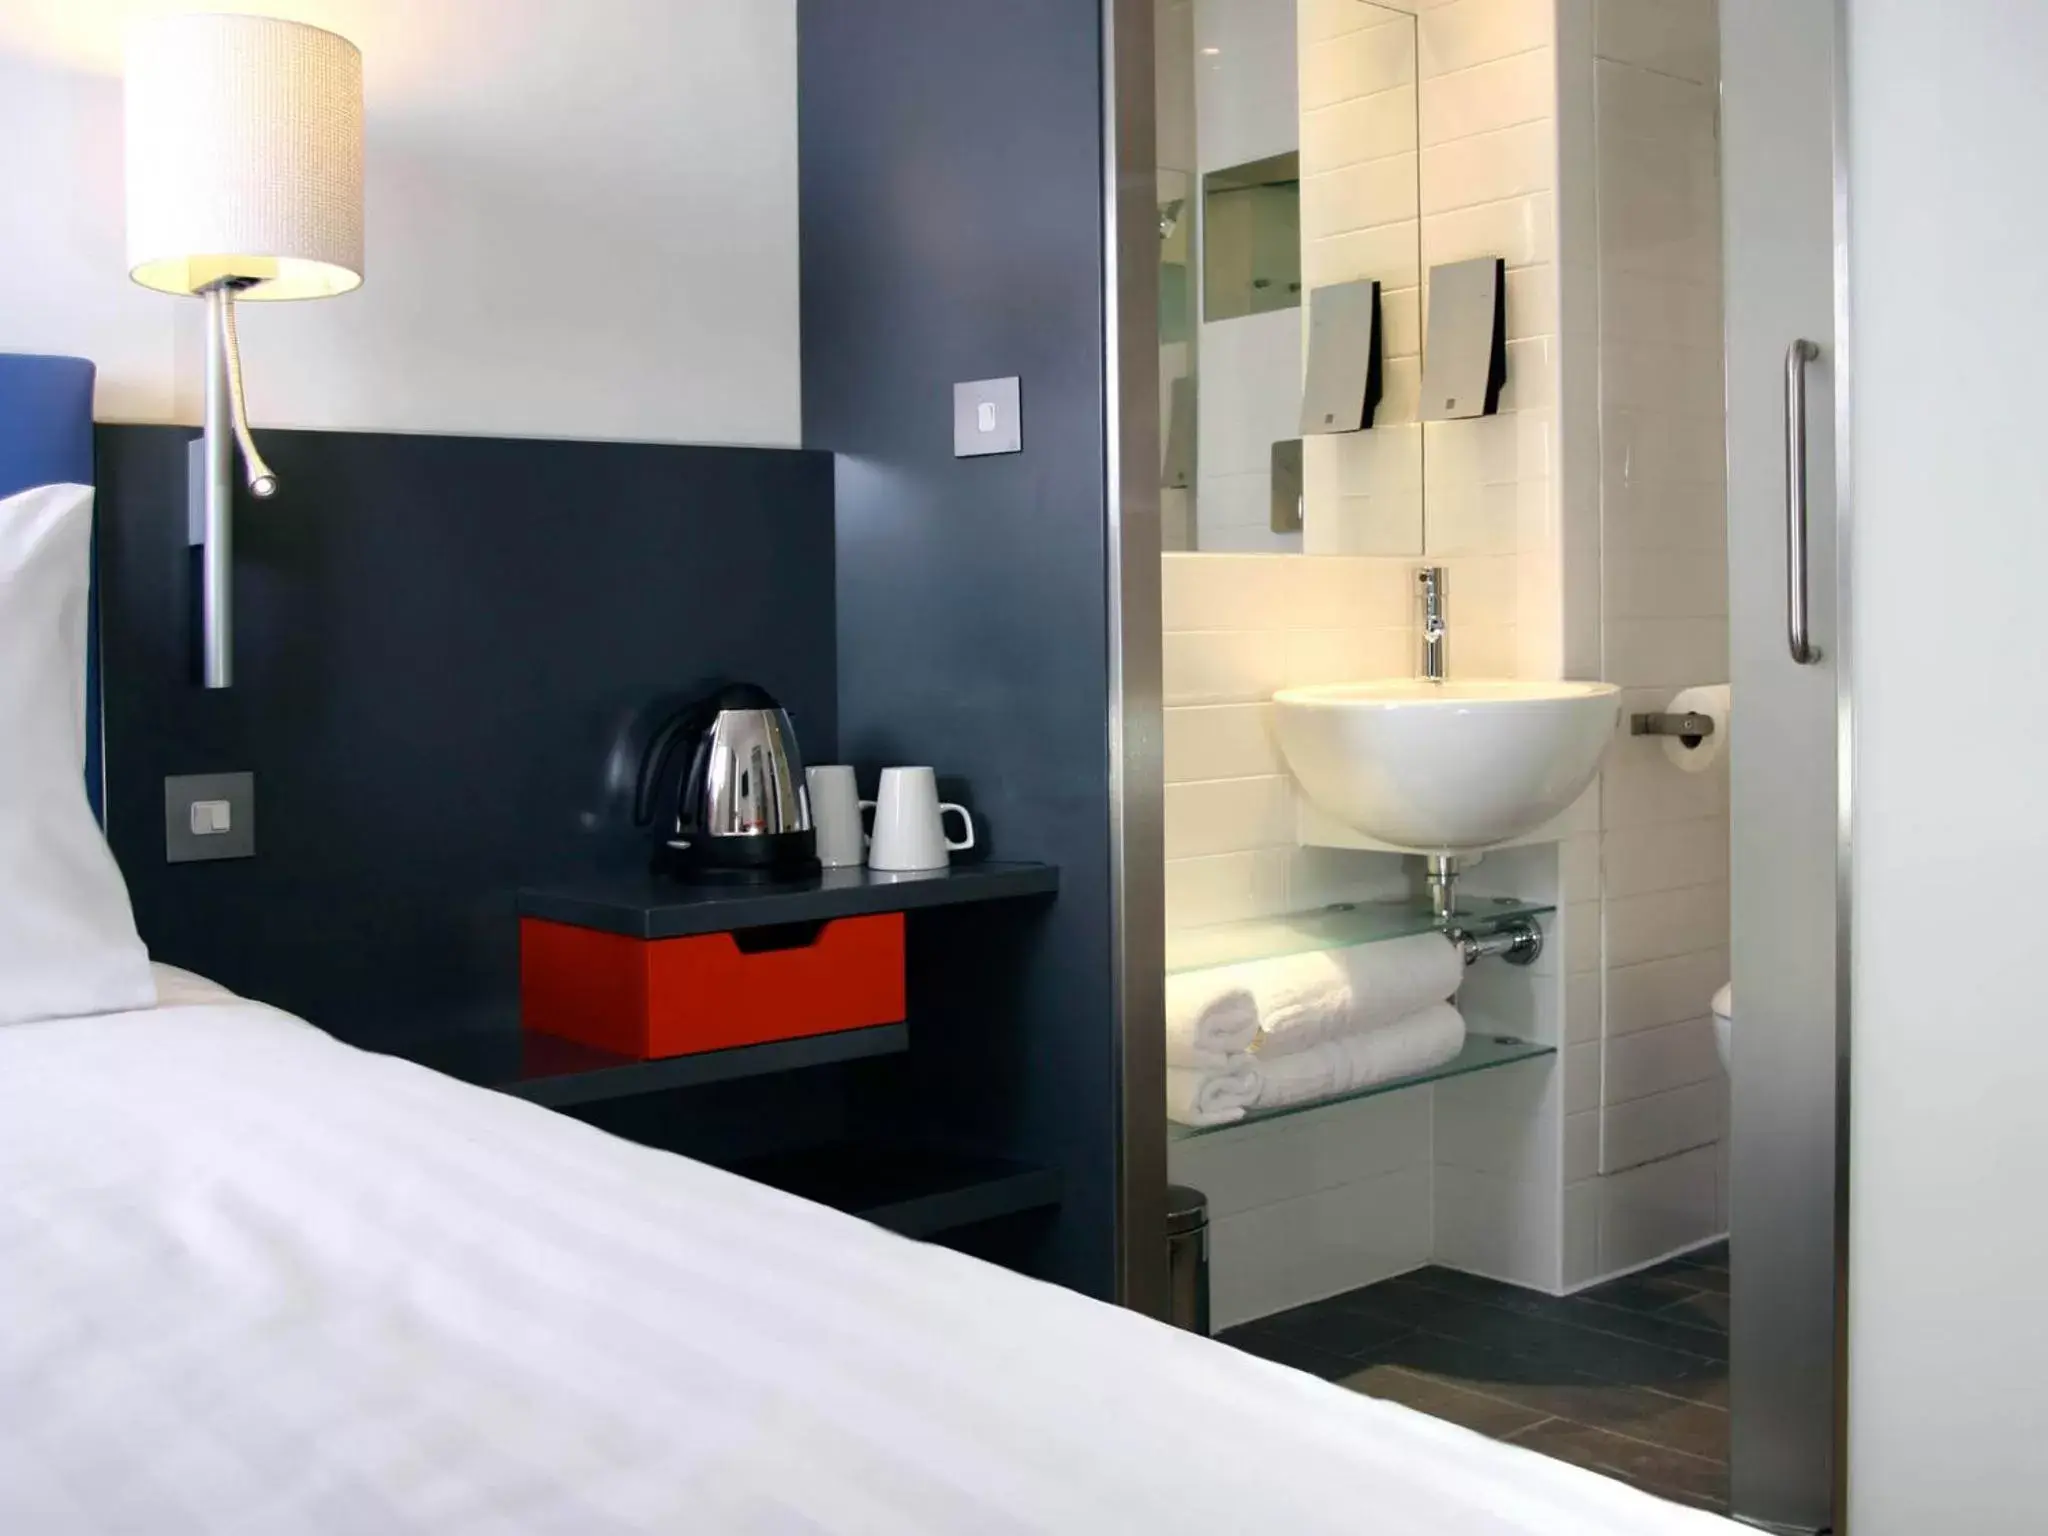 Coffee/tea facilities, Bathroom in Sleeperz Hotel Cardiff